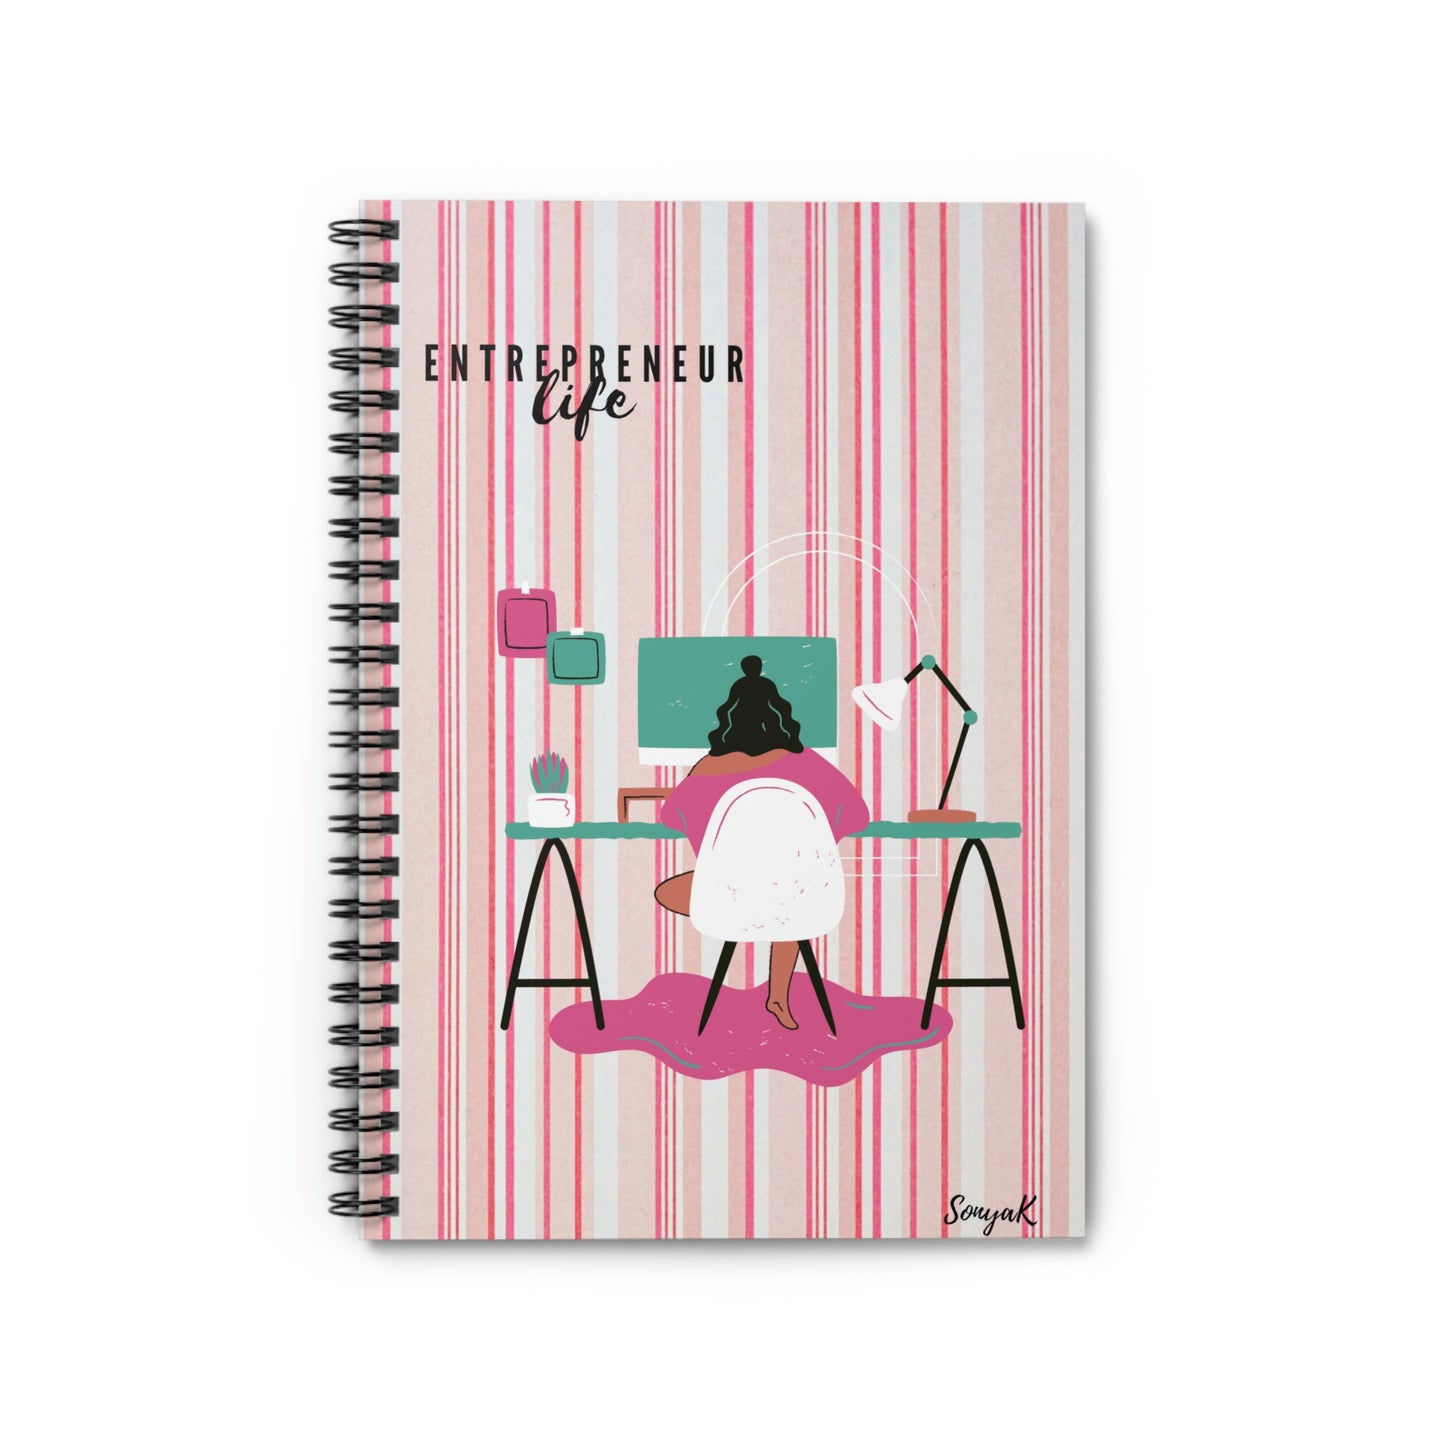 Entrepreneur Life (Spiral Notebook - Ruled Line/Pink Stripe)